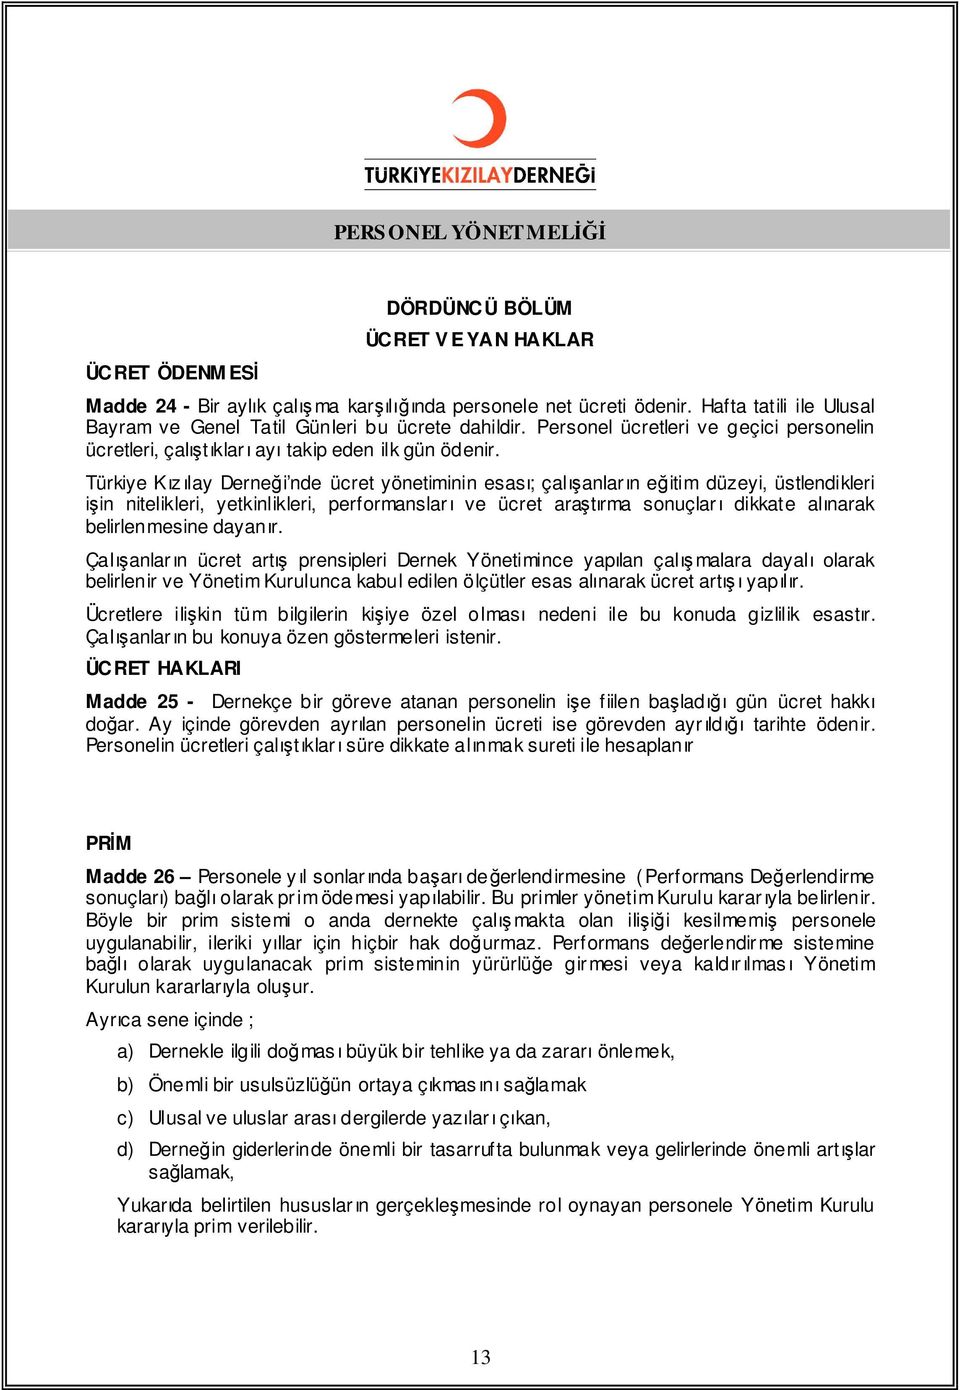 Türkiye Kız ılay Derneği nde ücret yönetiminin esası; çalışanların eğitim düzeyi, üstlendikleri işin nitelikleri, yetkinlikleri, performansları ve ücret araştırma sonuçları dikkate alınarak